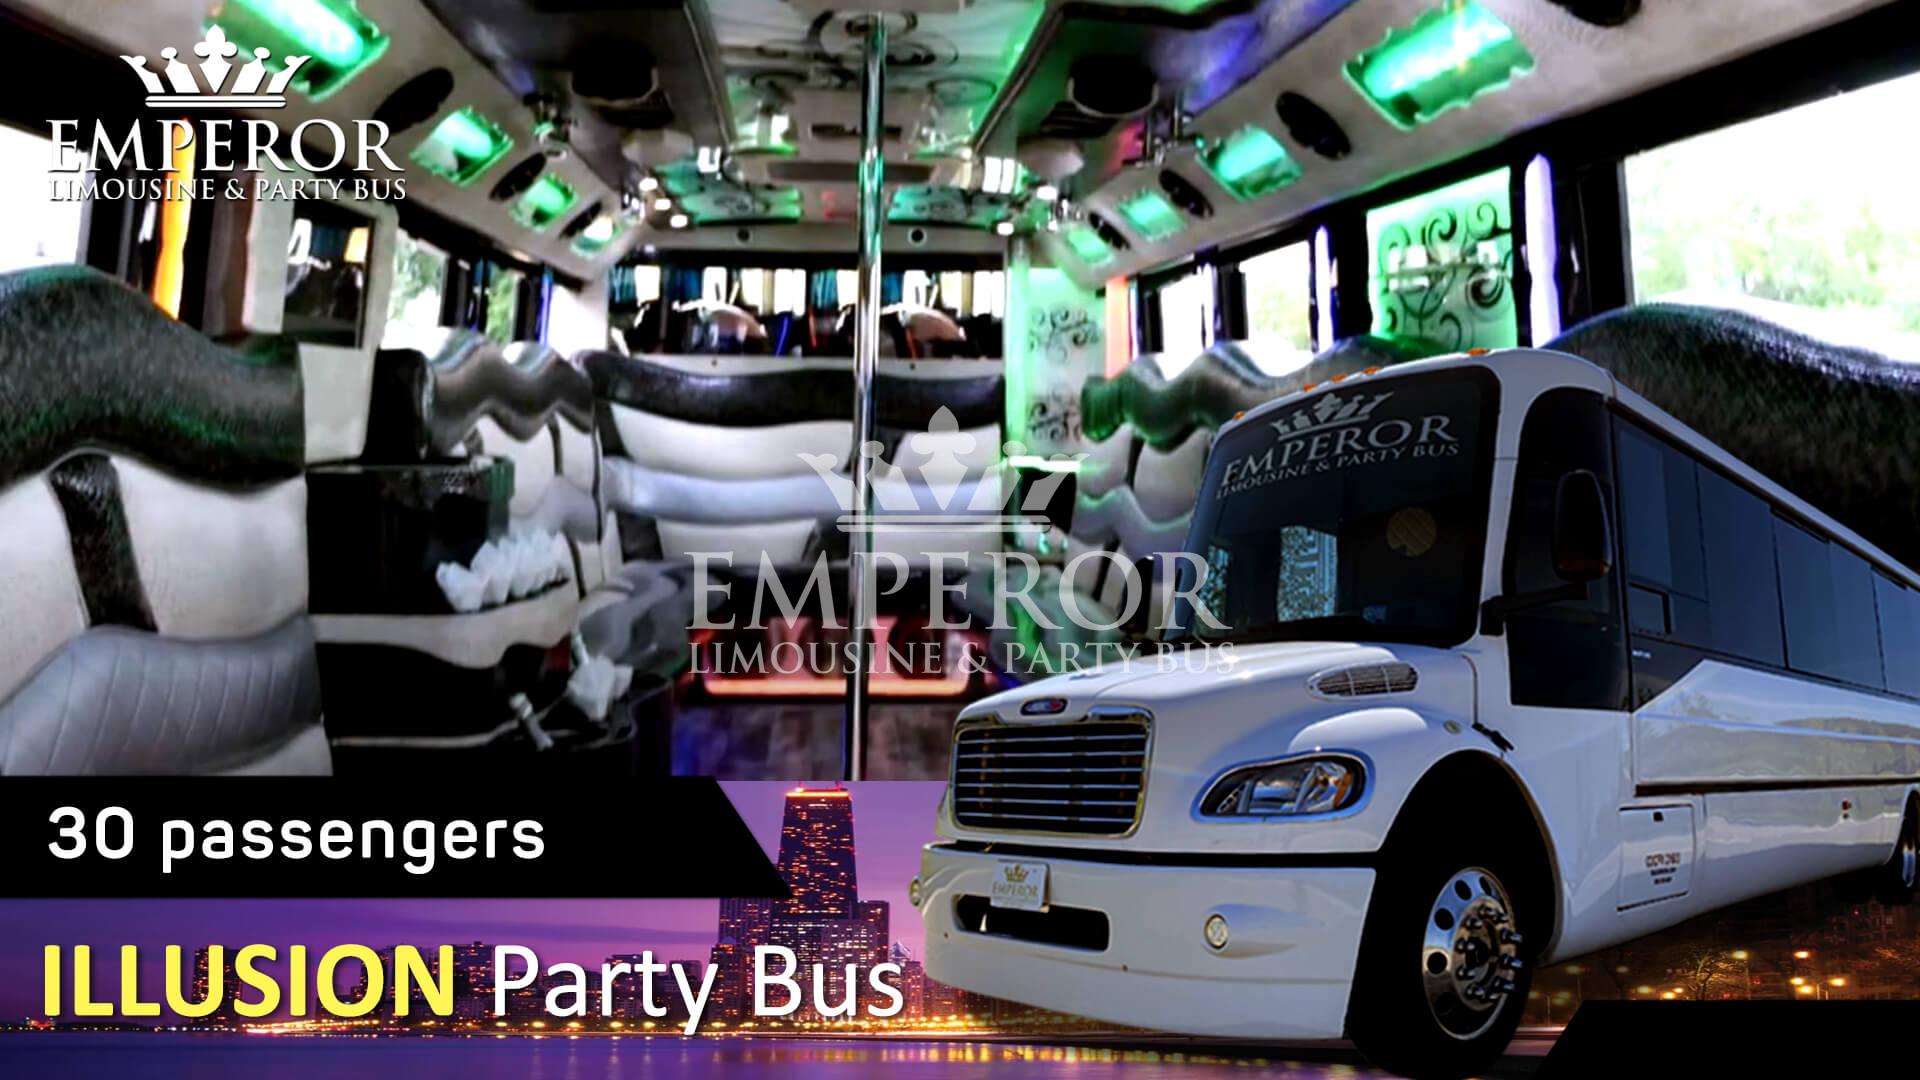 Hire Bachelorette party bus - Illusion Edition